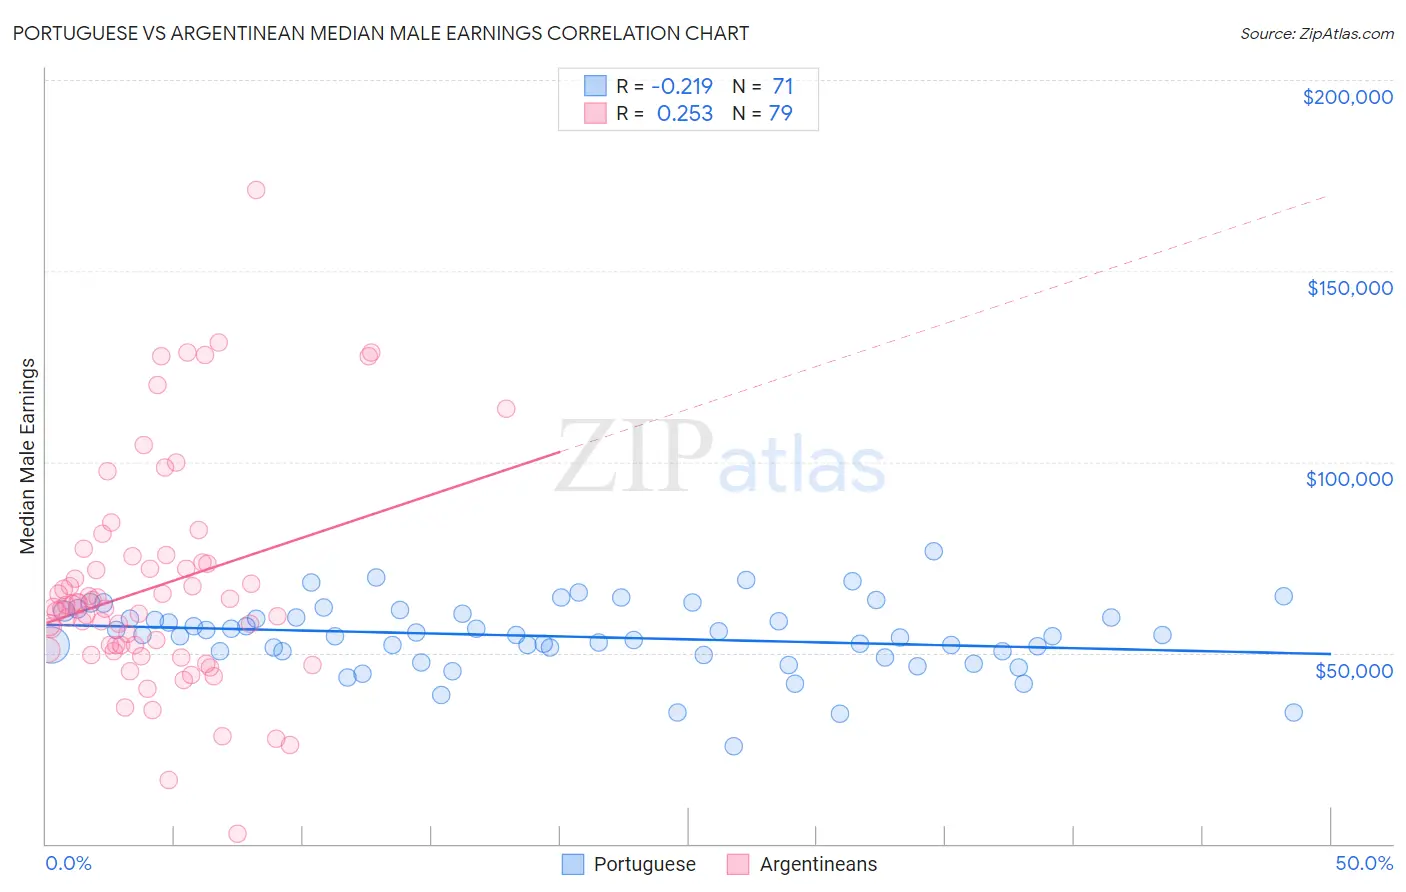 Portuguese vs Argentinean Median Male Earnings